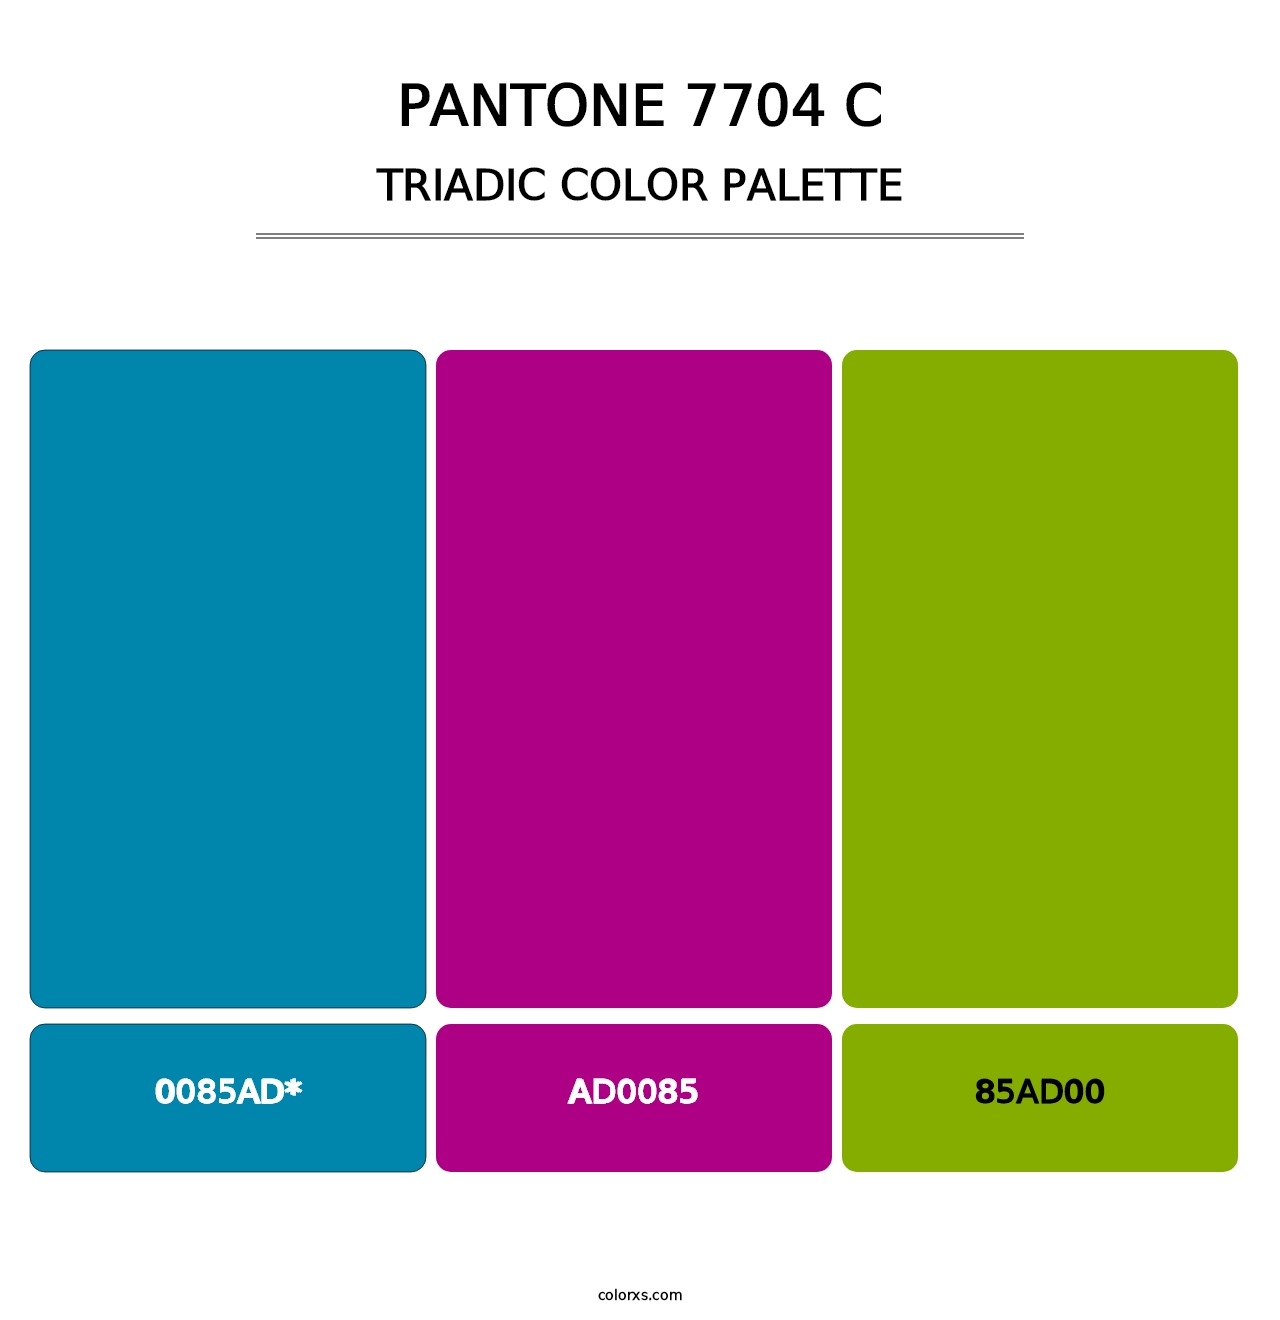 PANTONE 7704 C - Triadic Color Palette